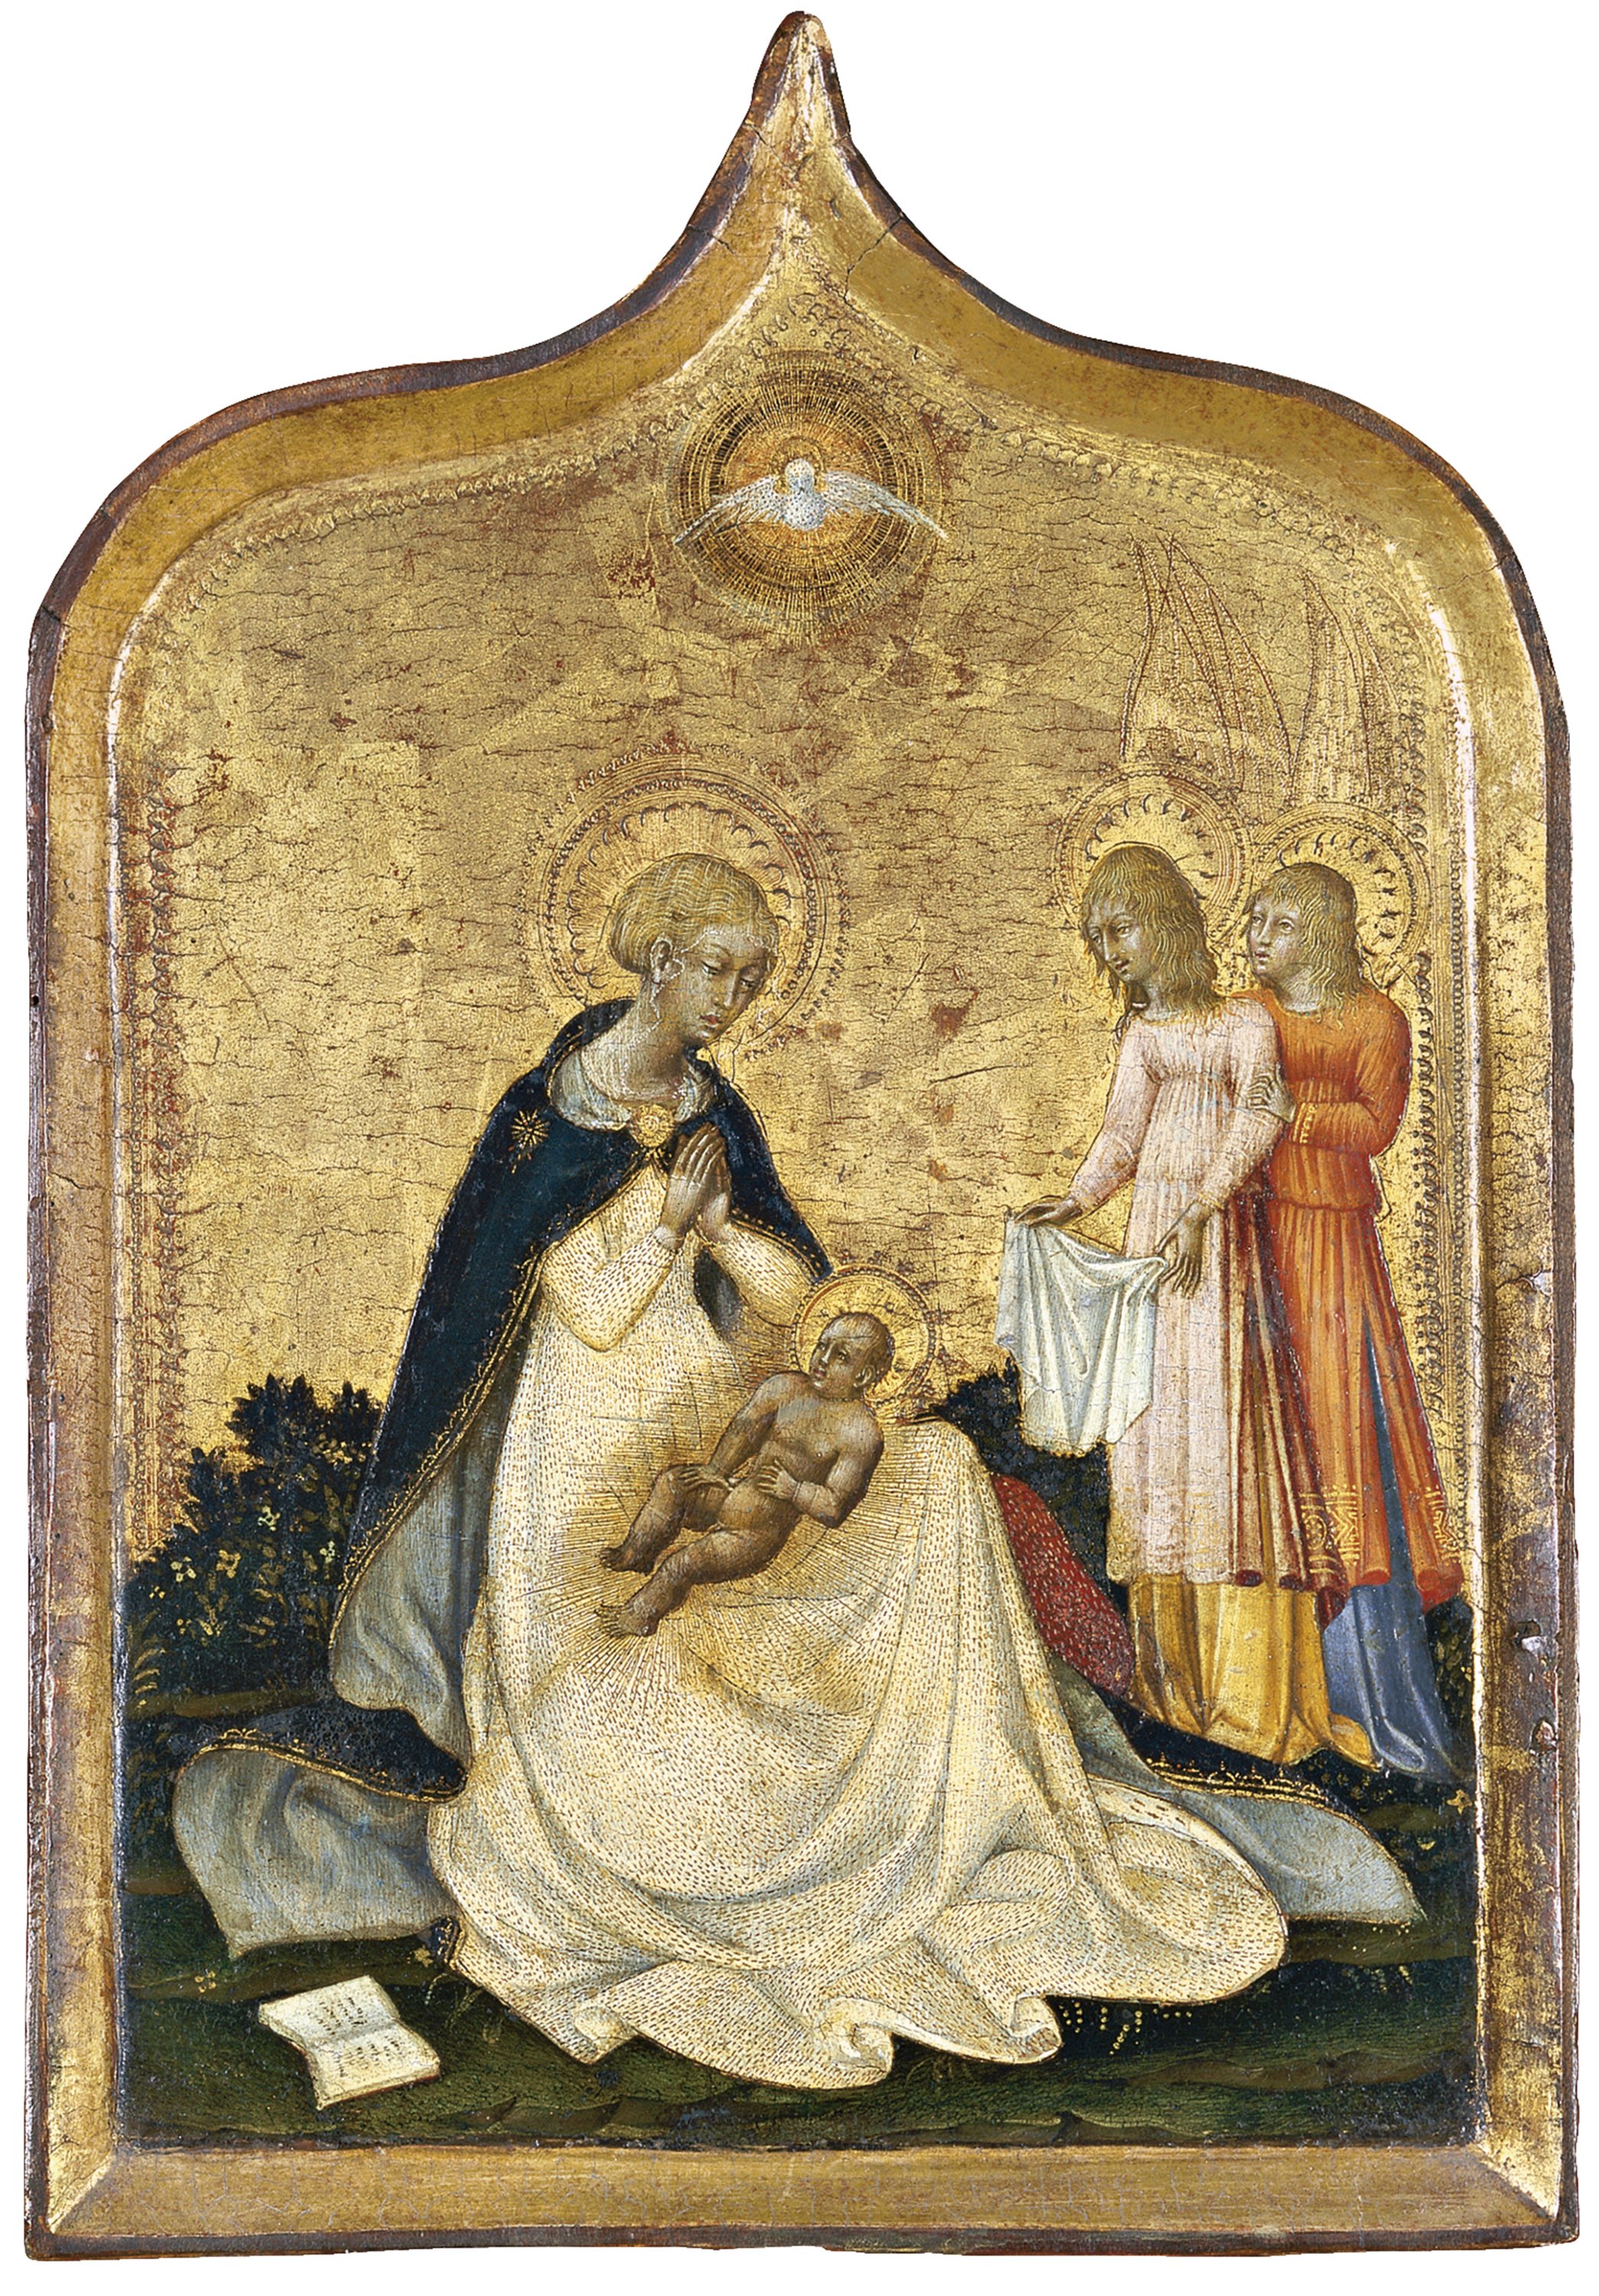 The Virgin of Humility. La Virgen de la Humildad, c. 1440